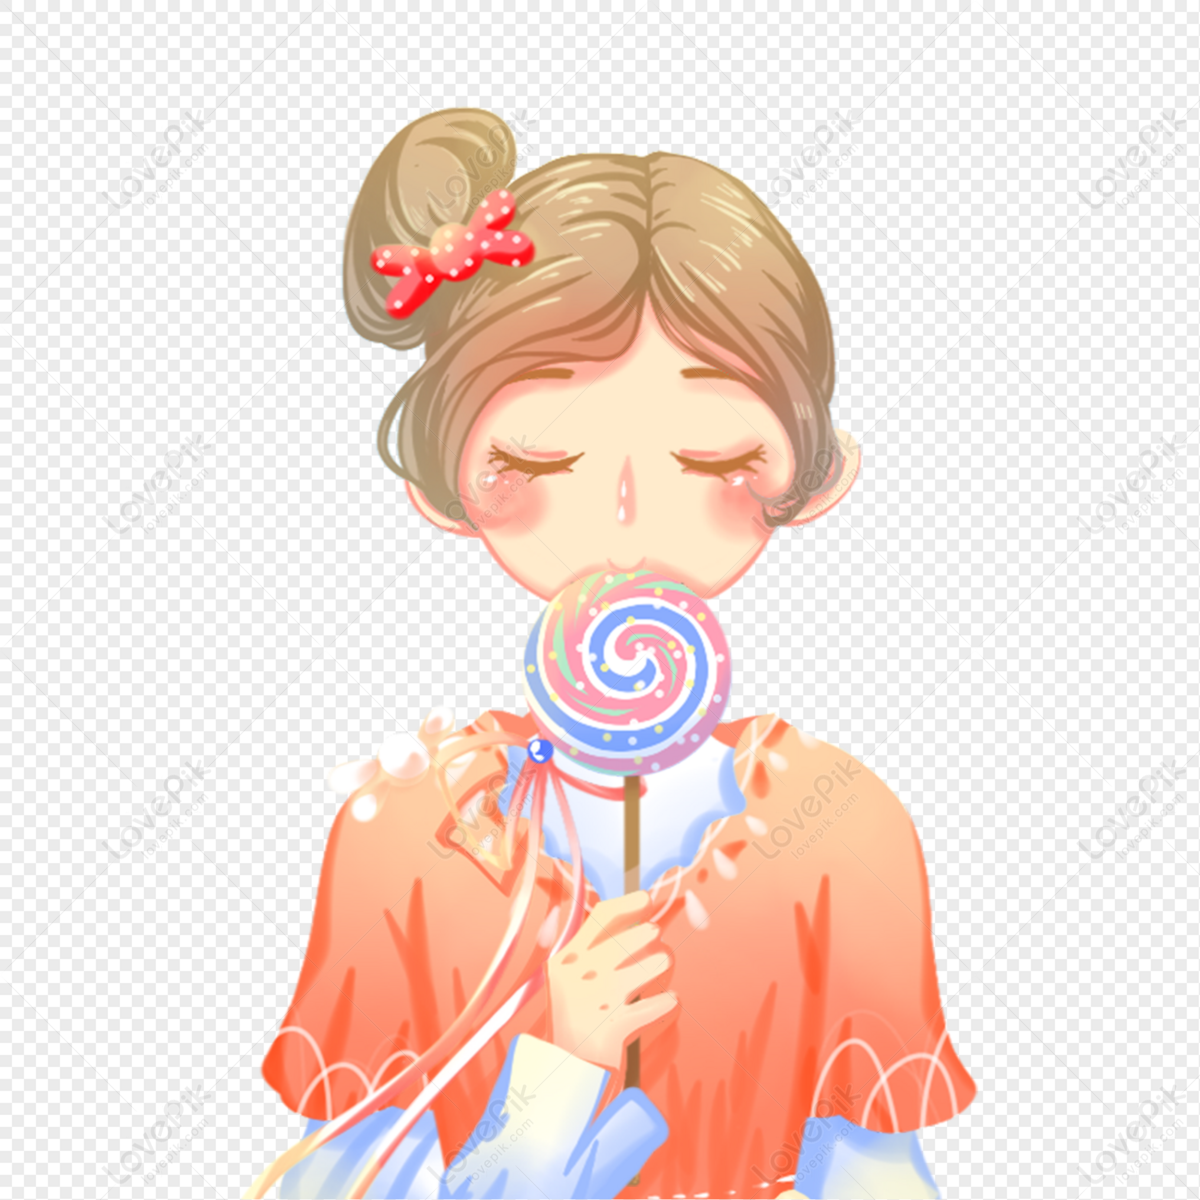 girl eating lollipop clipart